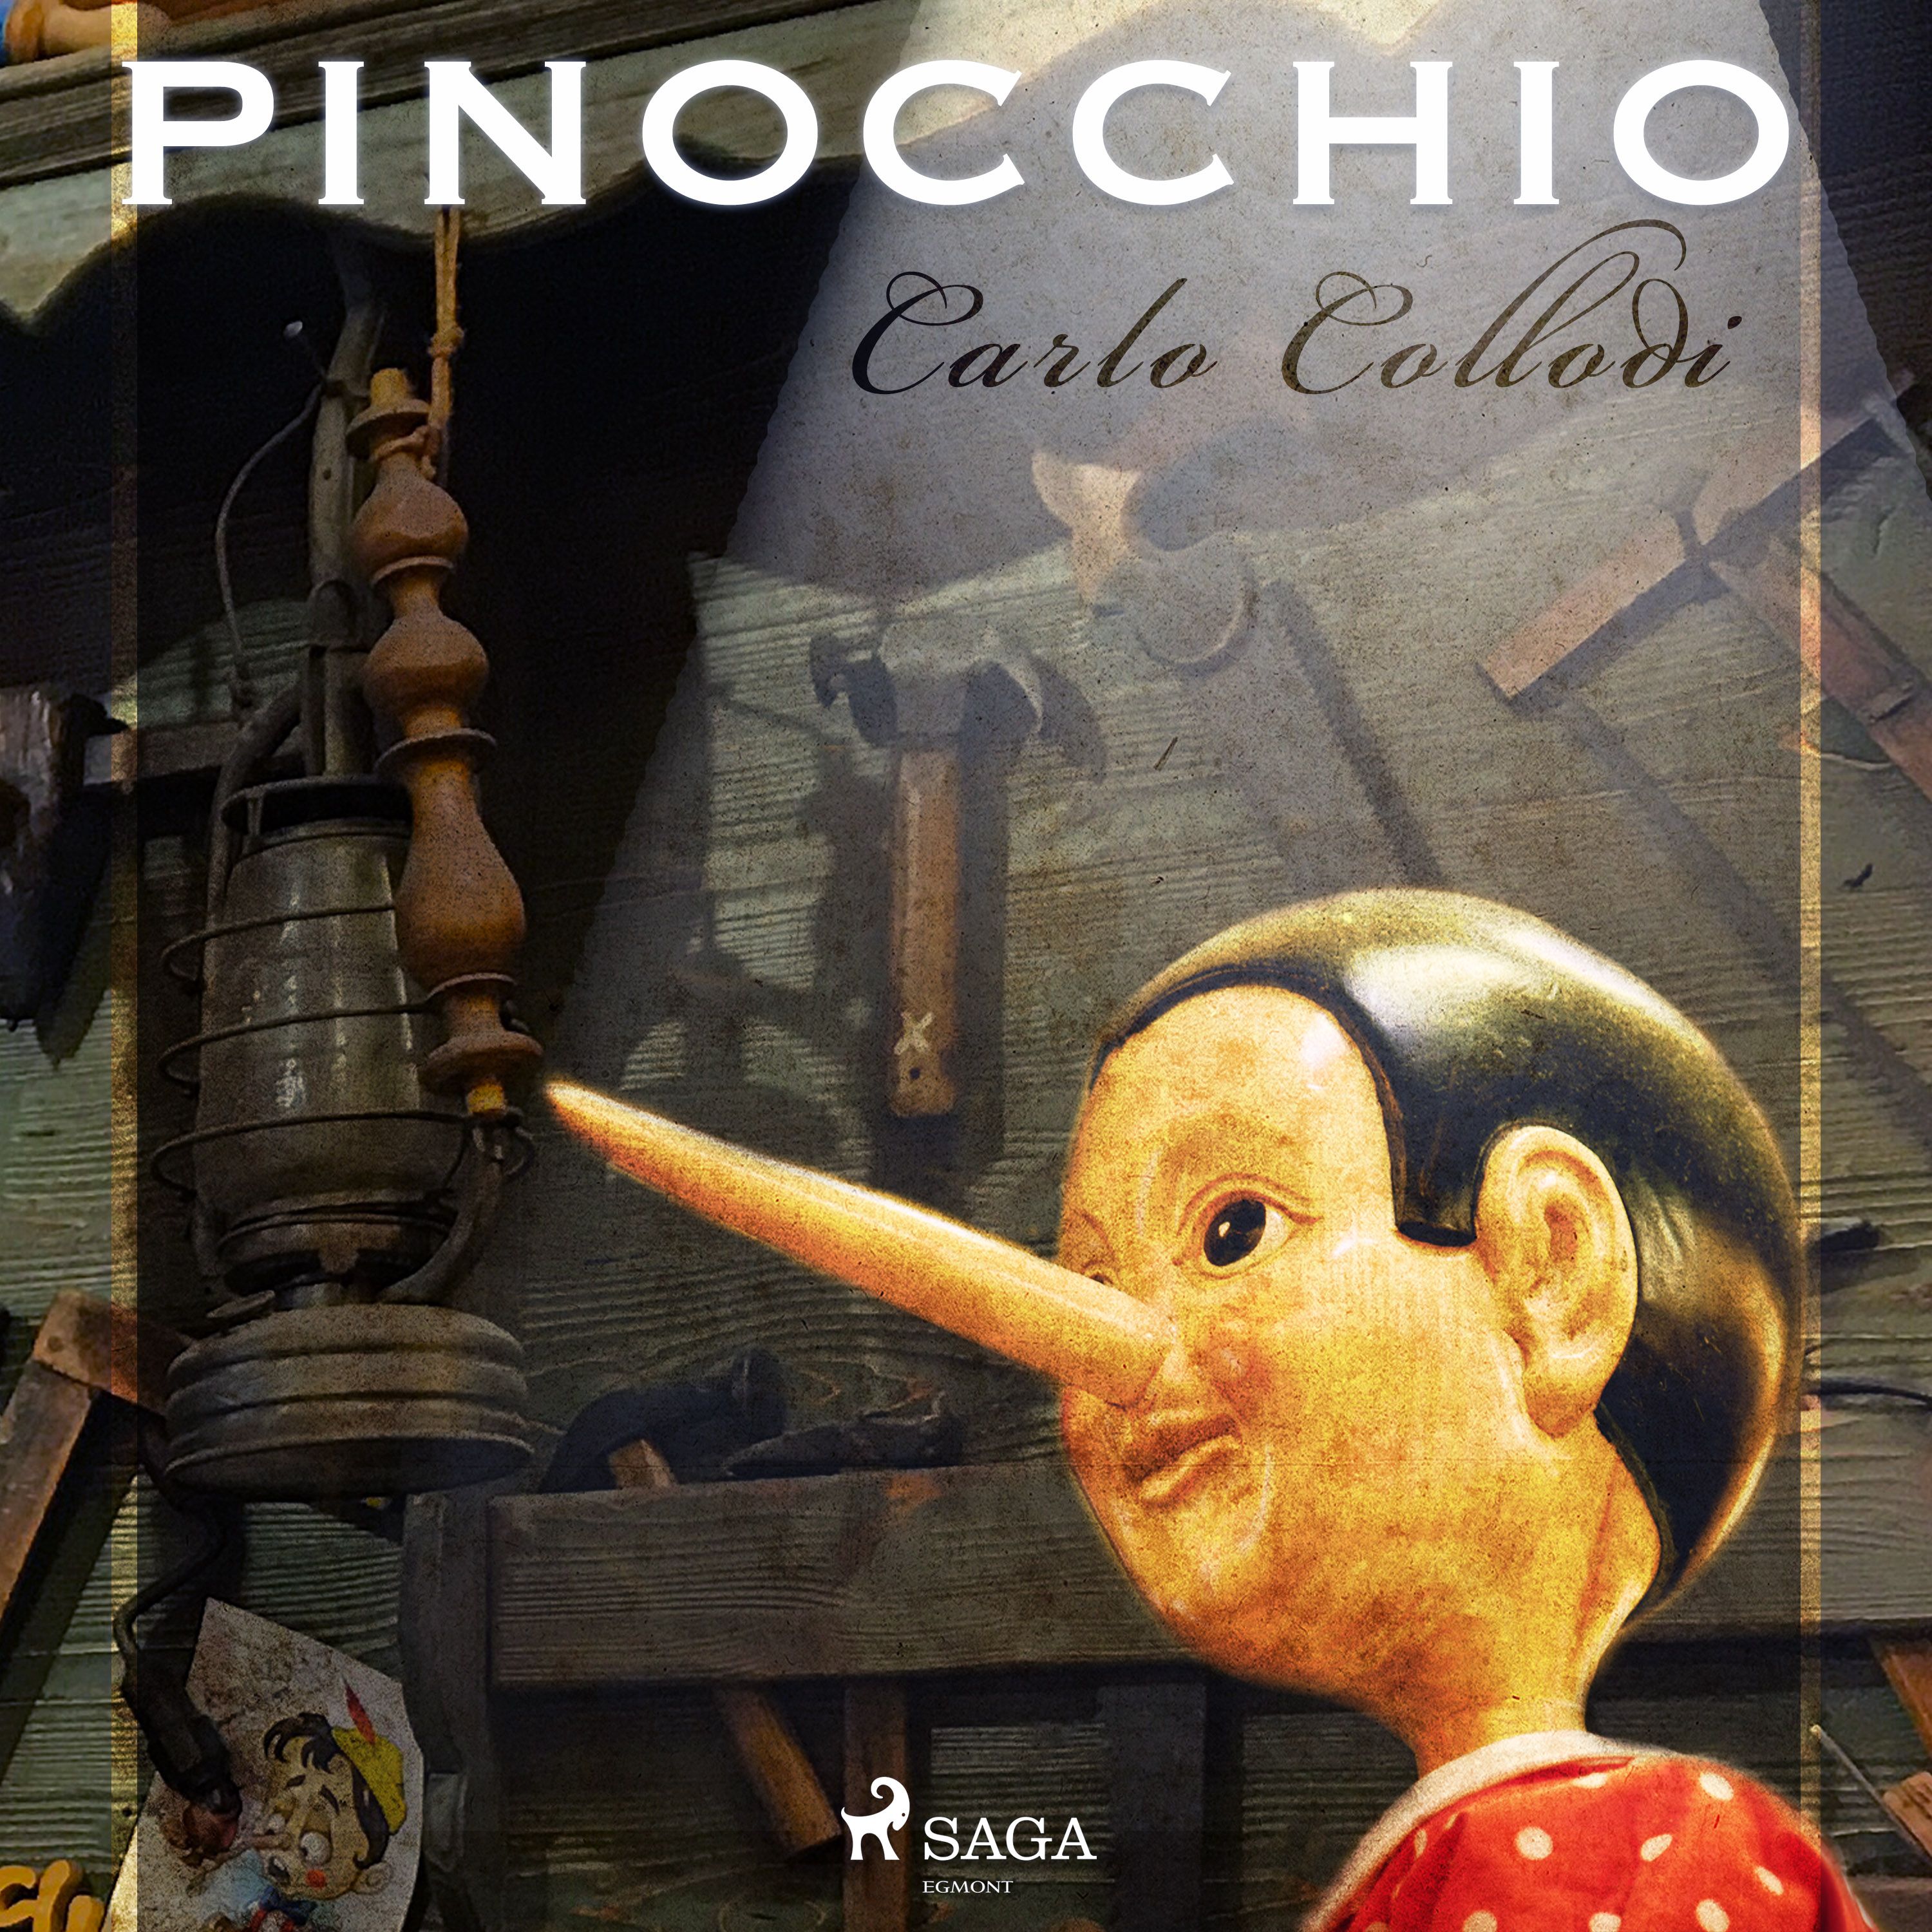 Pinocchio, lydbog af Carlo Collodi